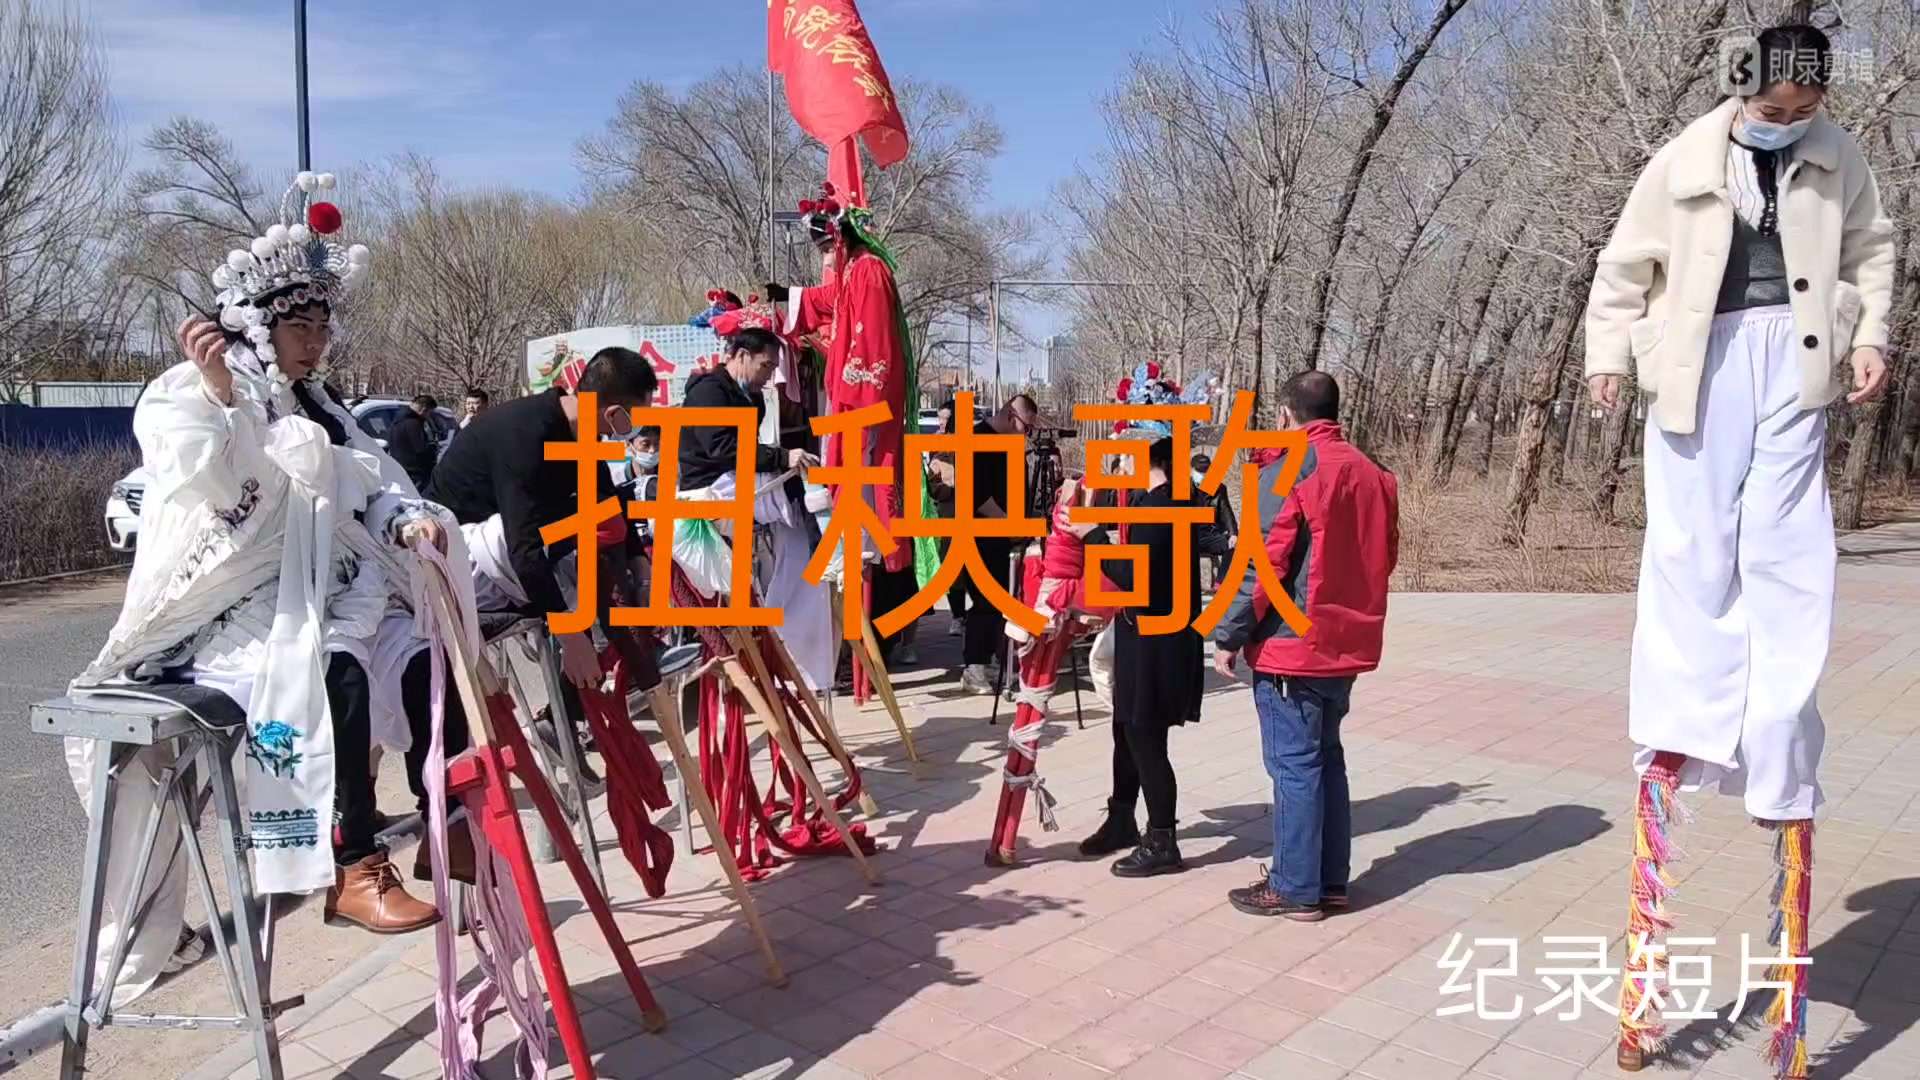 纪录短片《扭秧歌》导演孙浩蒙古孙浩手机拍摄内蒙古宁城